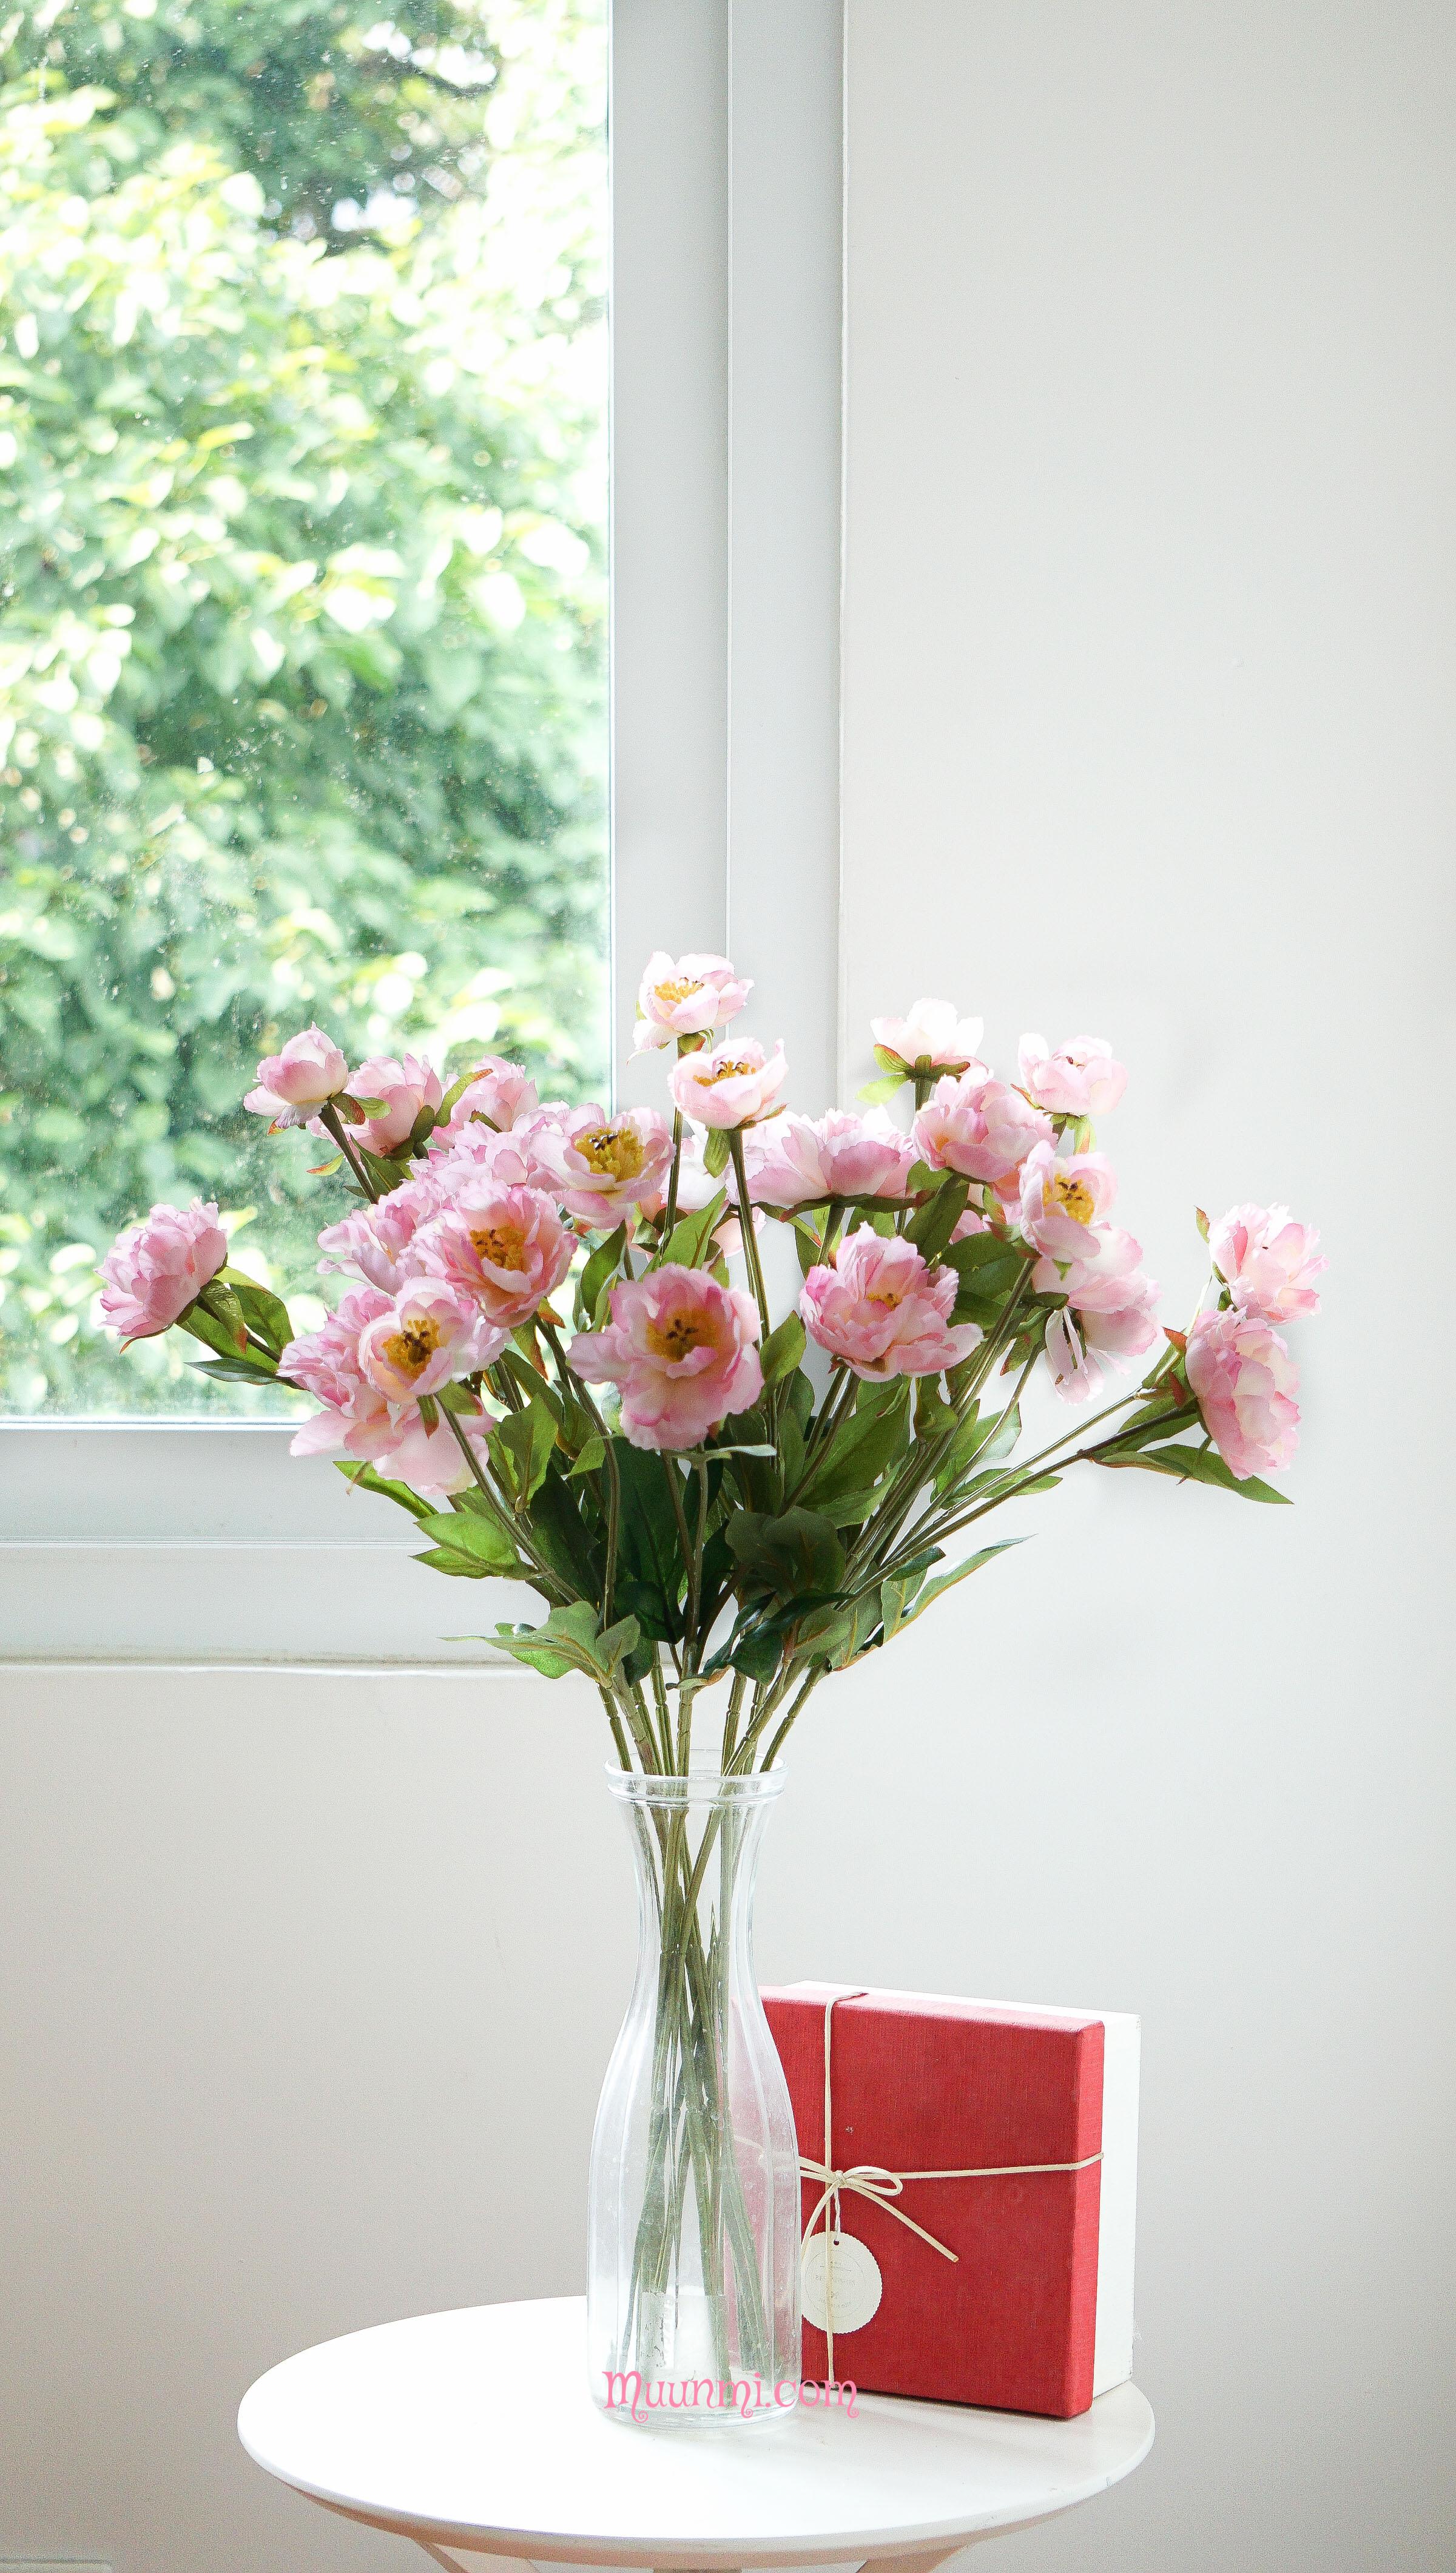 Hoa lụa | Hoa MẪU ĐƠN CÔNG CHÚA màu hồng phấn đẹp trang nhã ...